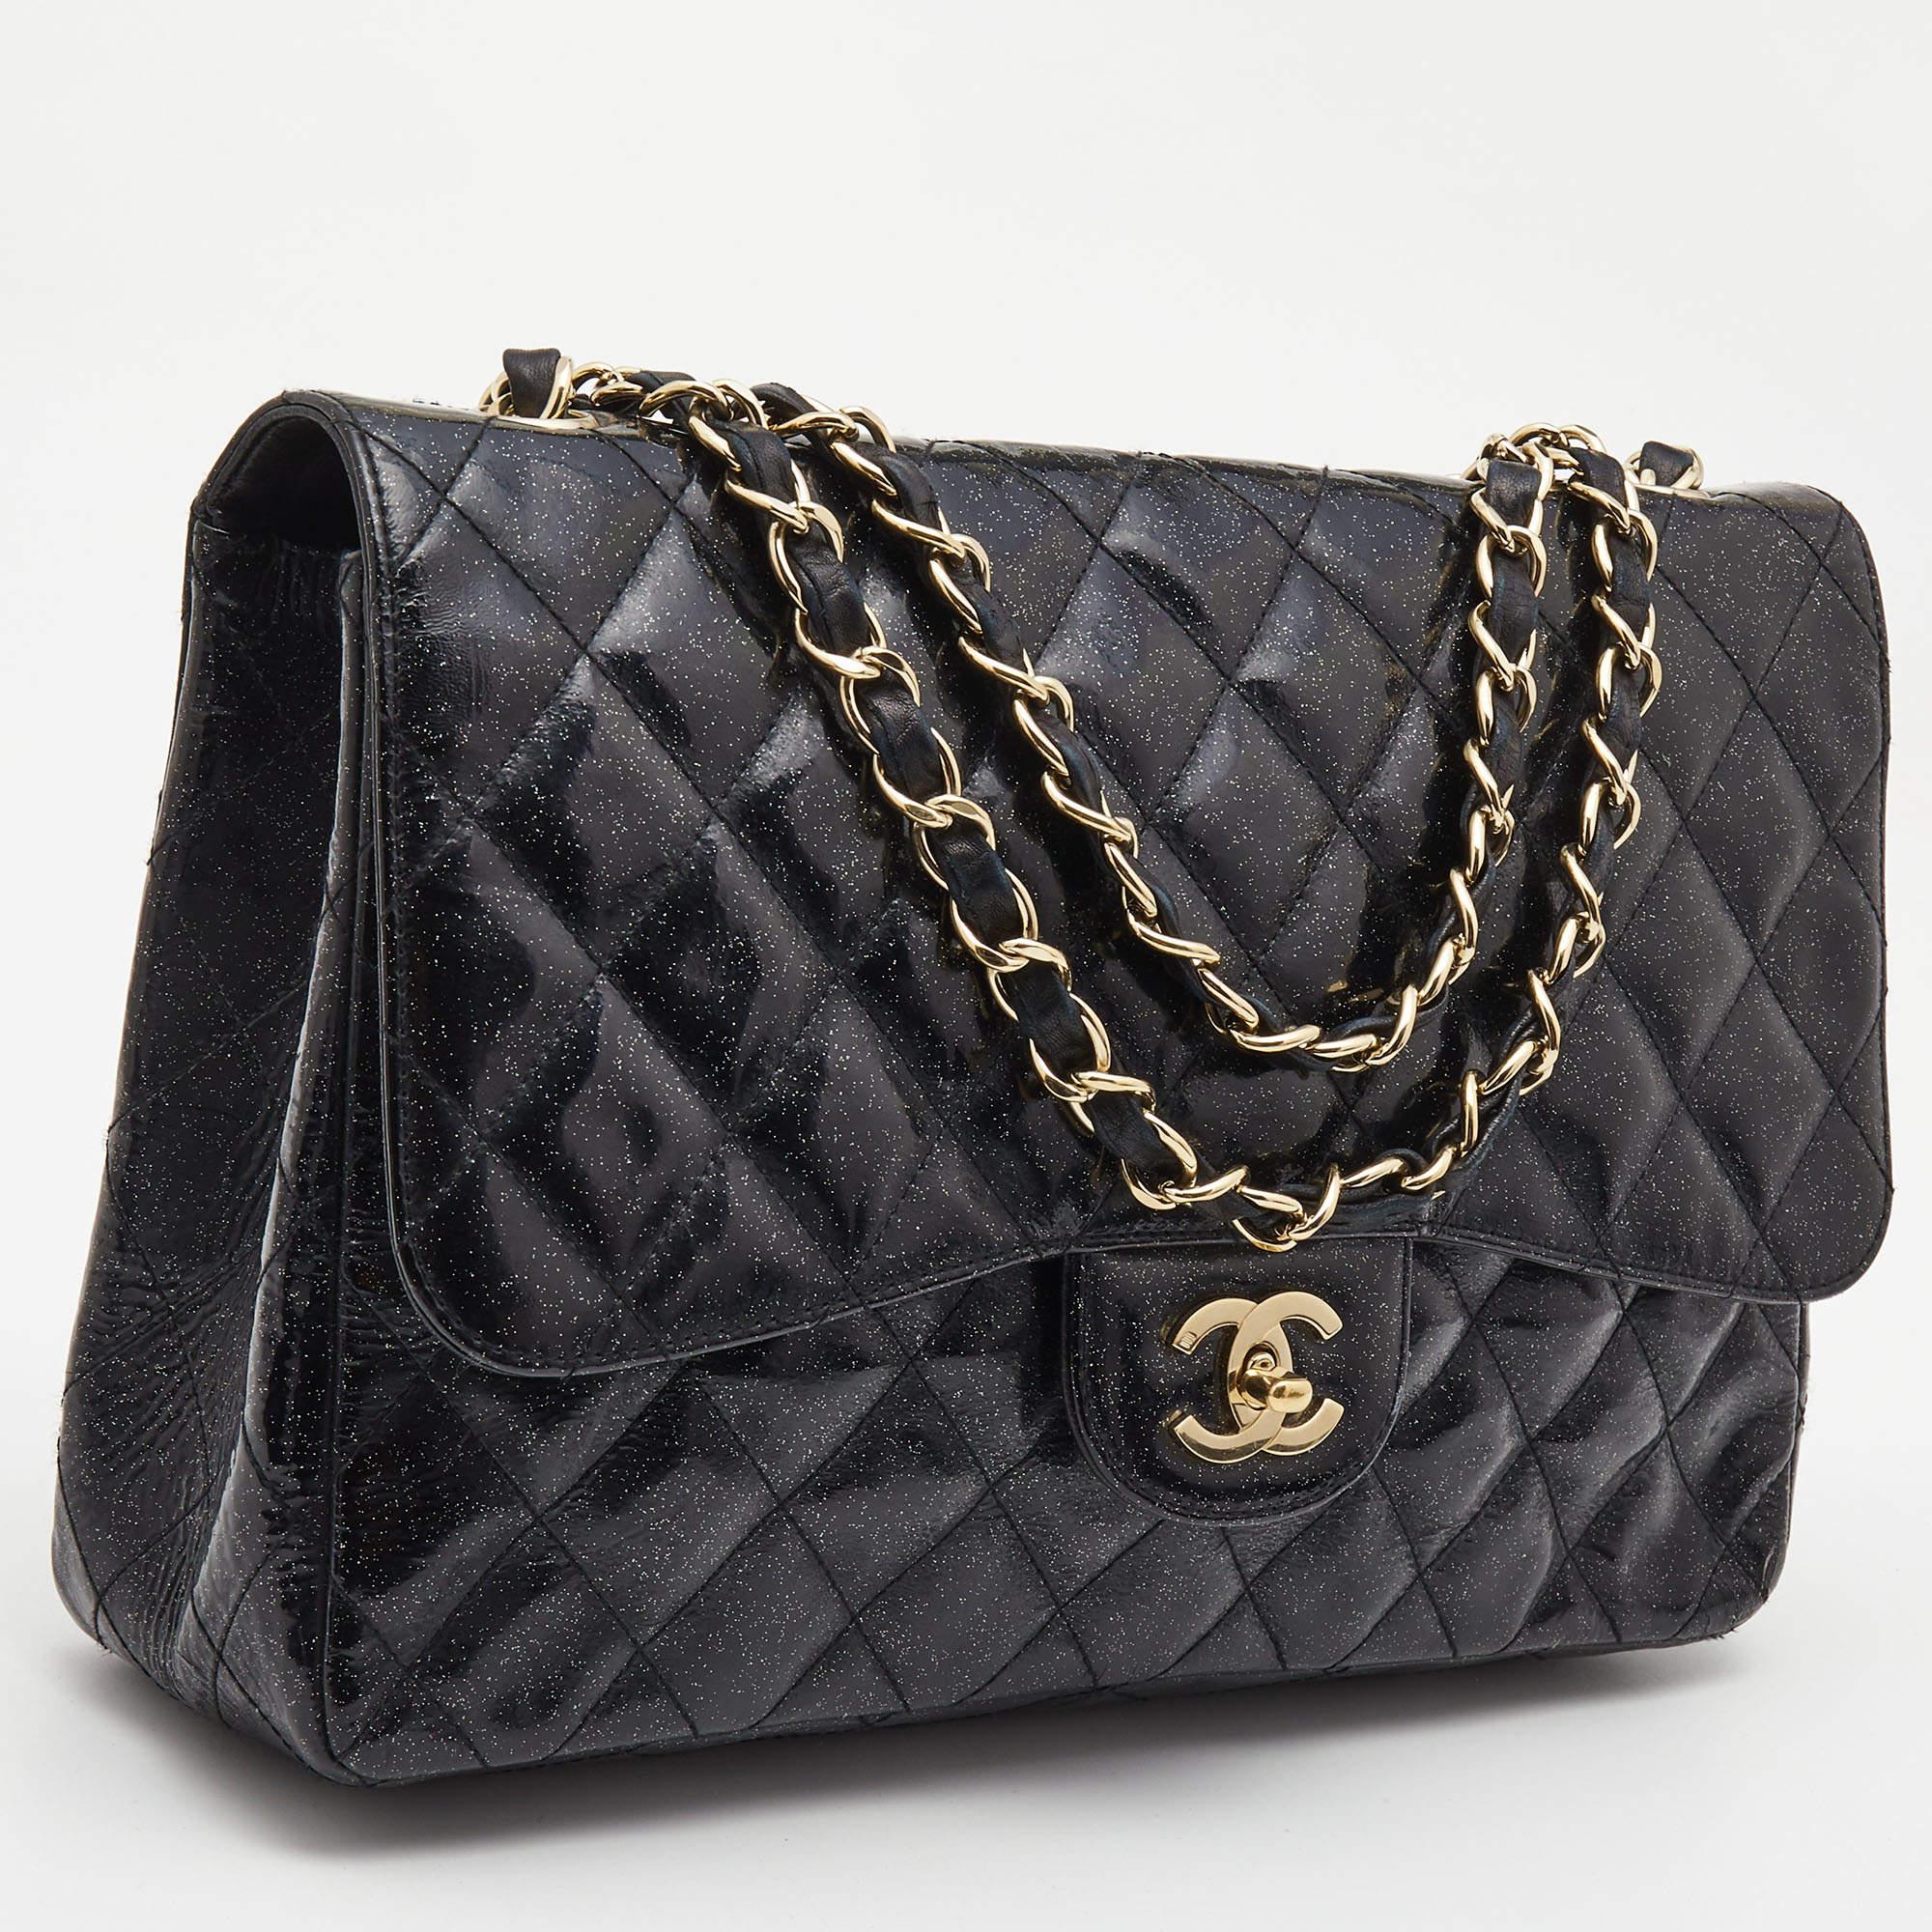 Eine klassische Handtasche verspricht dauerhafte Attraktivität und unterstreicht Ihren Stil immer wieder aufs Neue. Diese schwarze Tasche von Chanel ist eine solche Kreation. Das ist ein guter Kauf.

